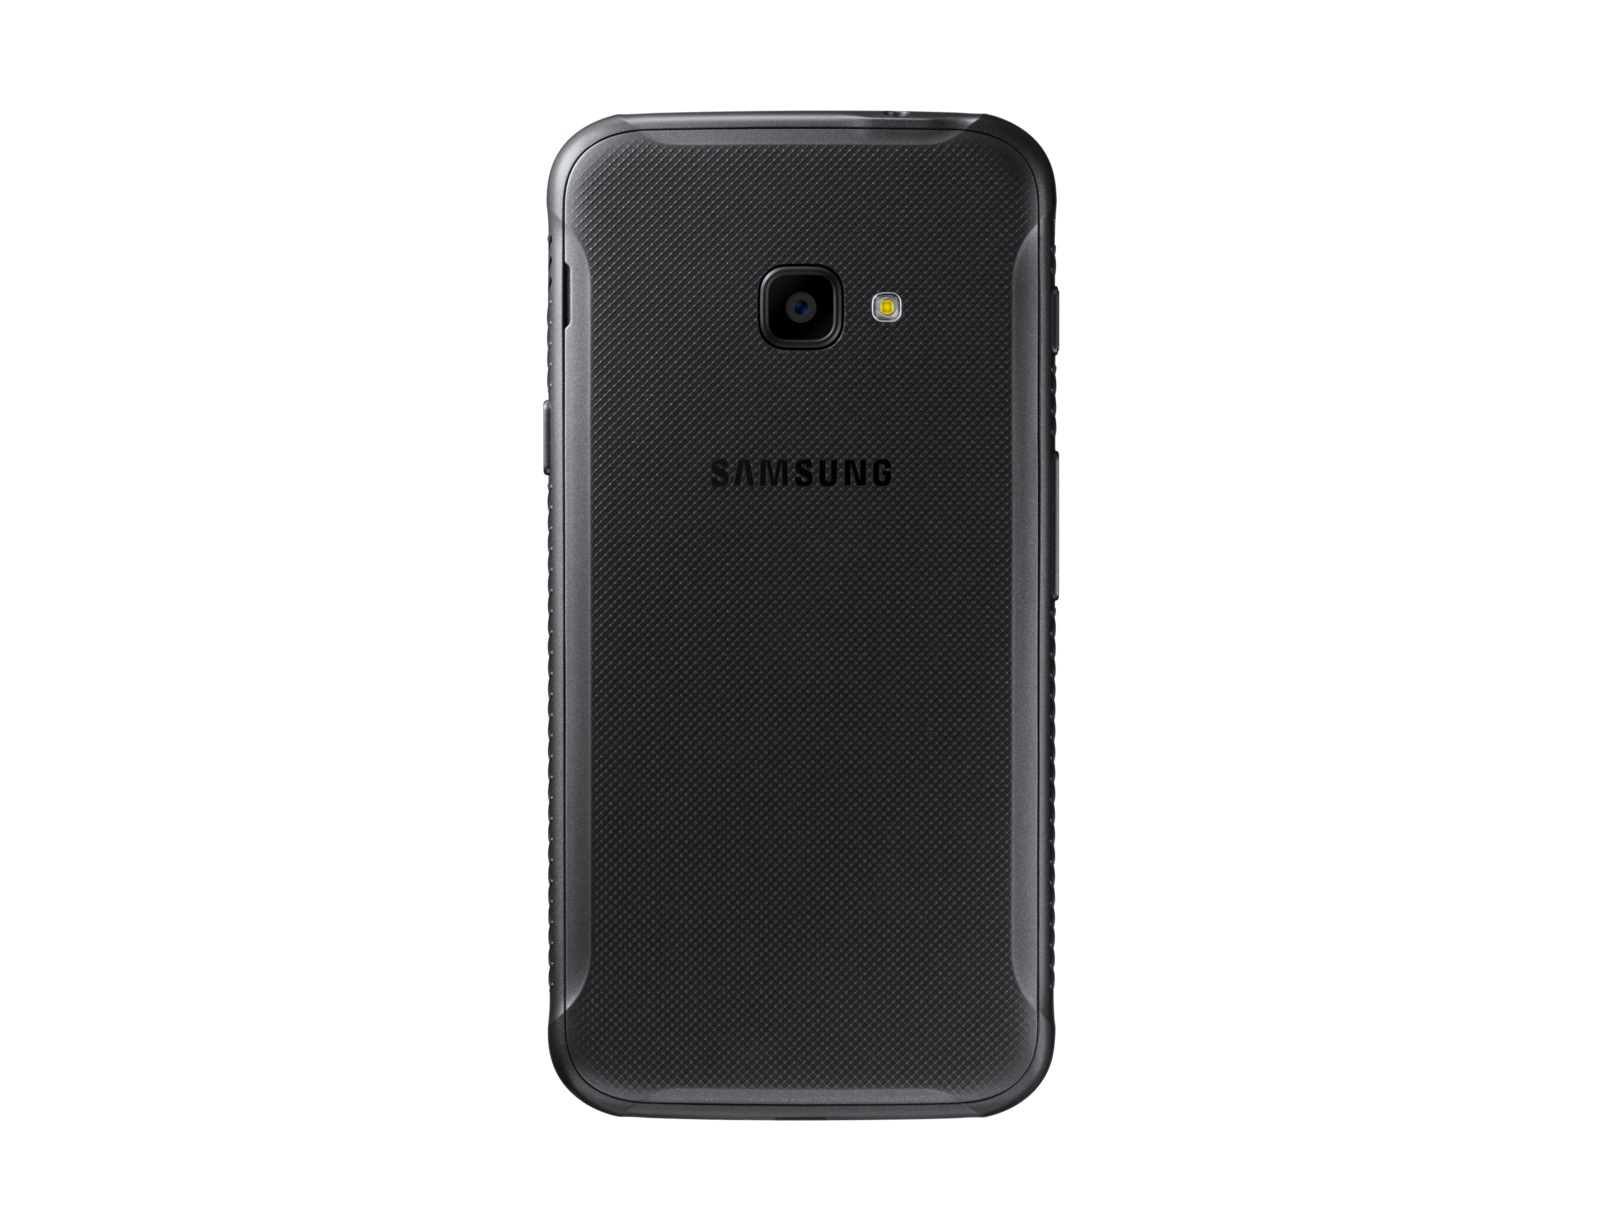 Samsung Durci Galaxy X Cover 4 - SM-G390F